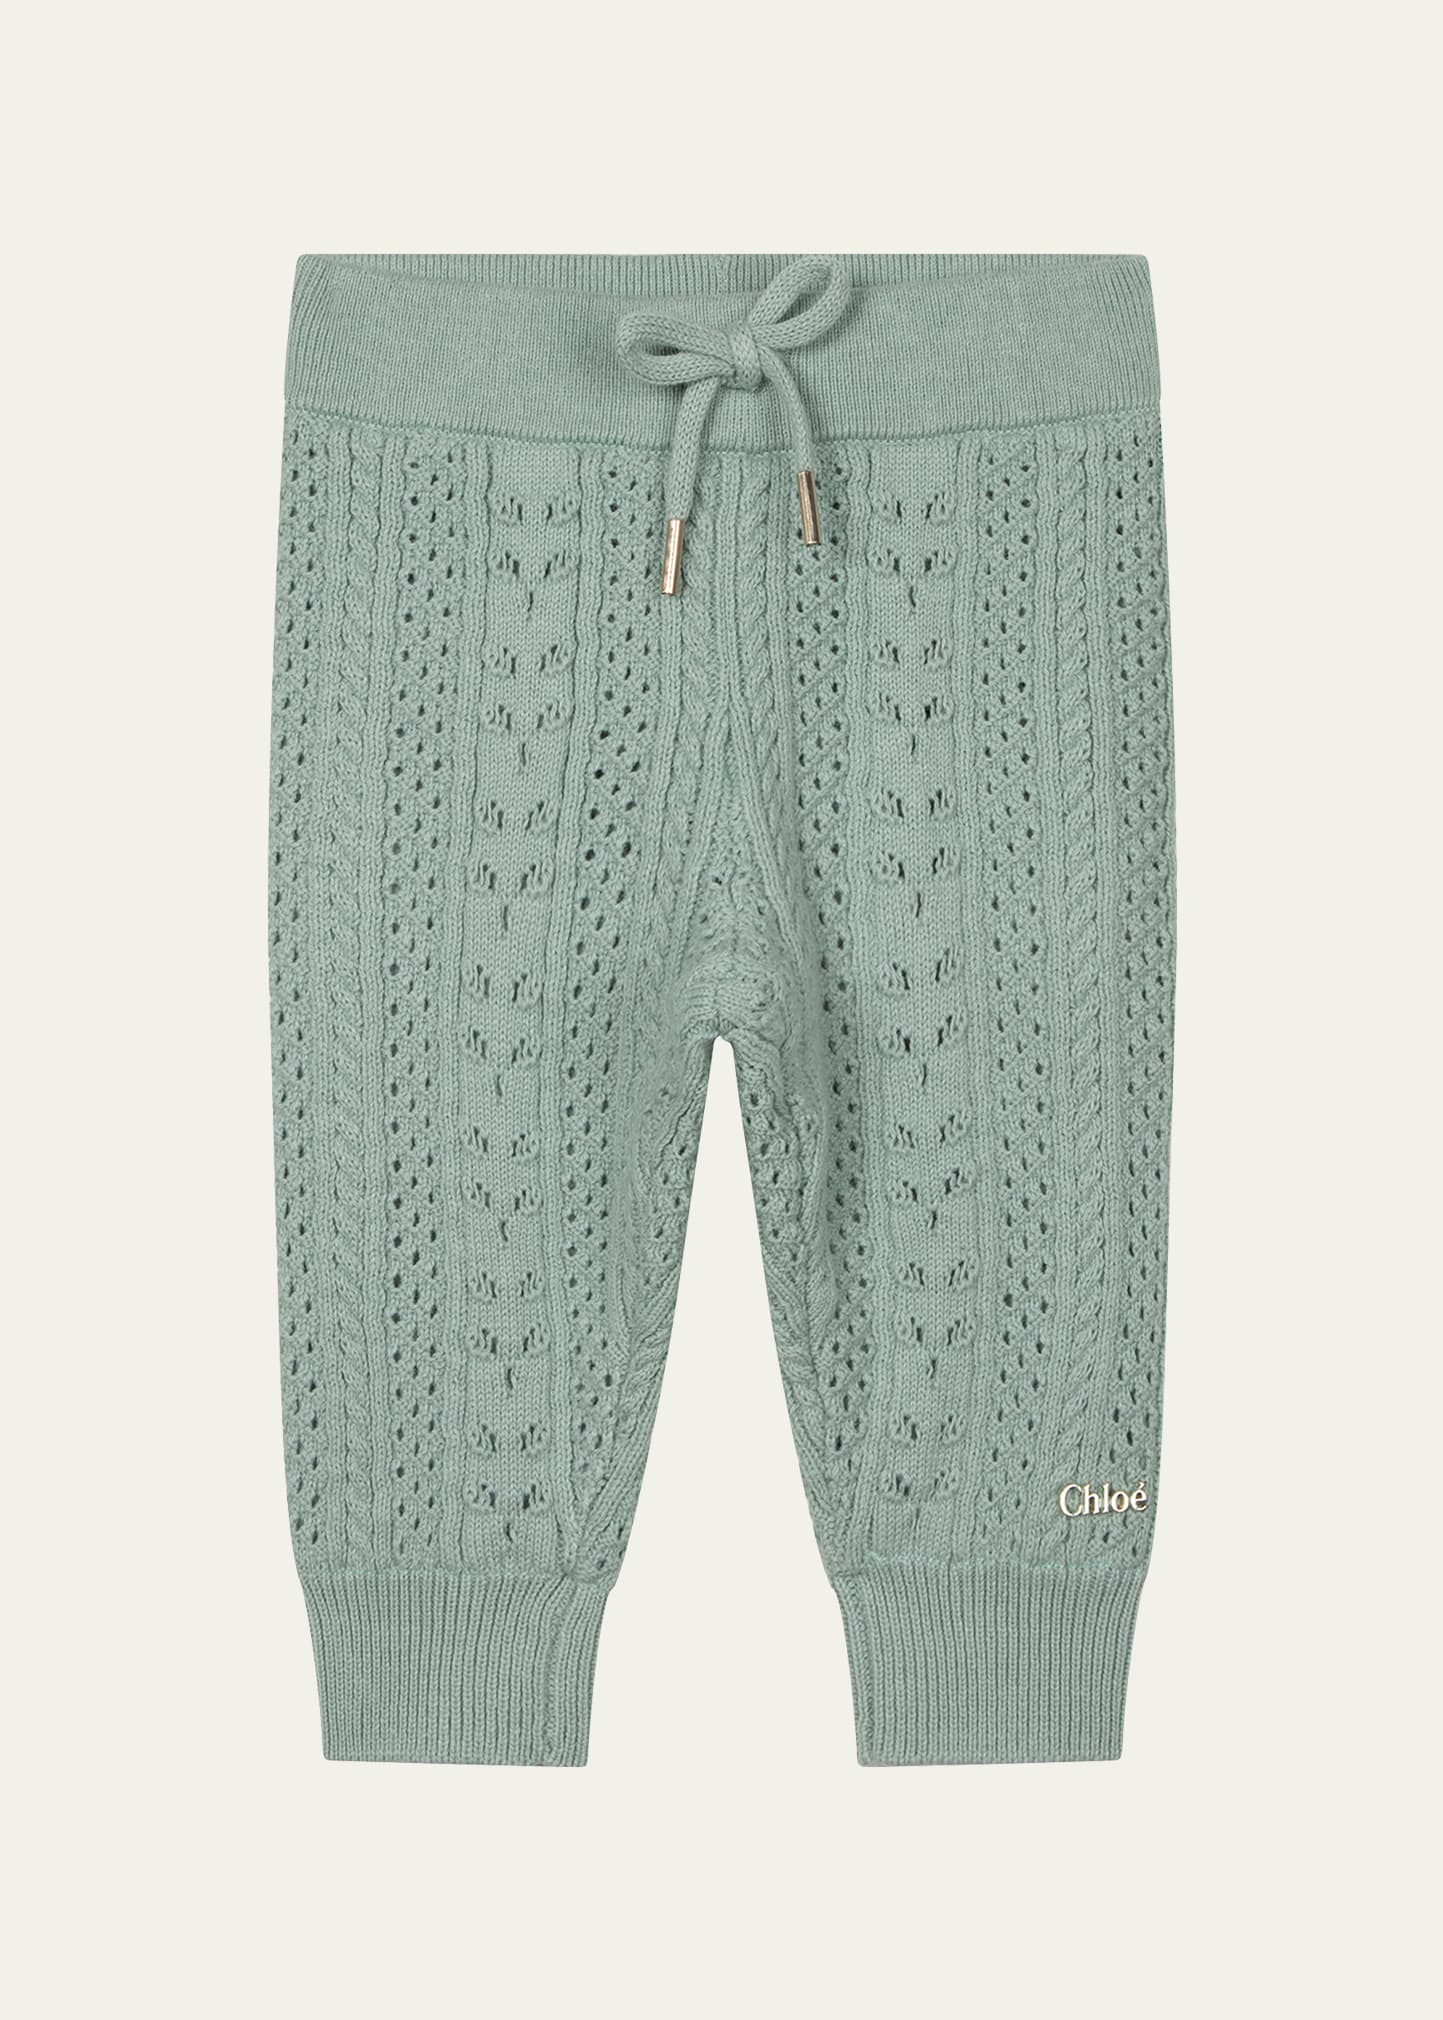 Girl's Knit Pants, Size 6M-3